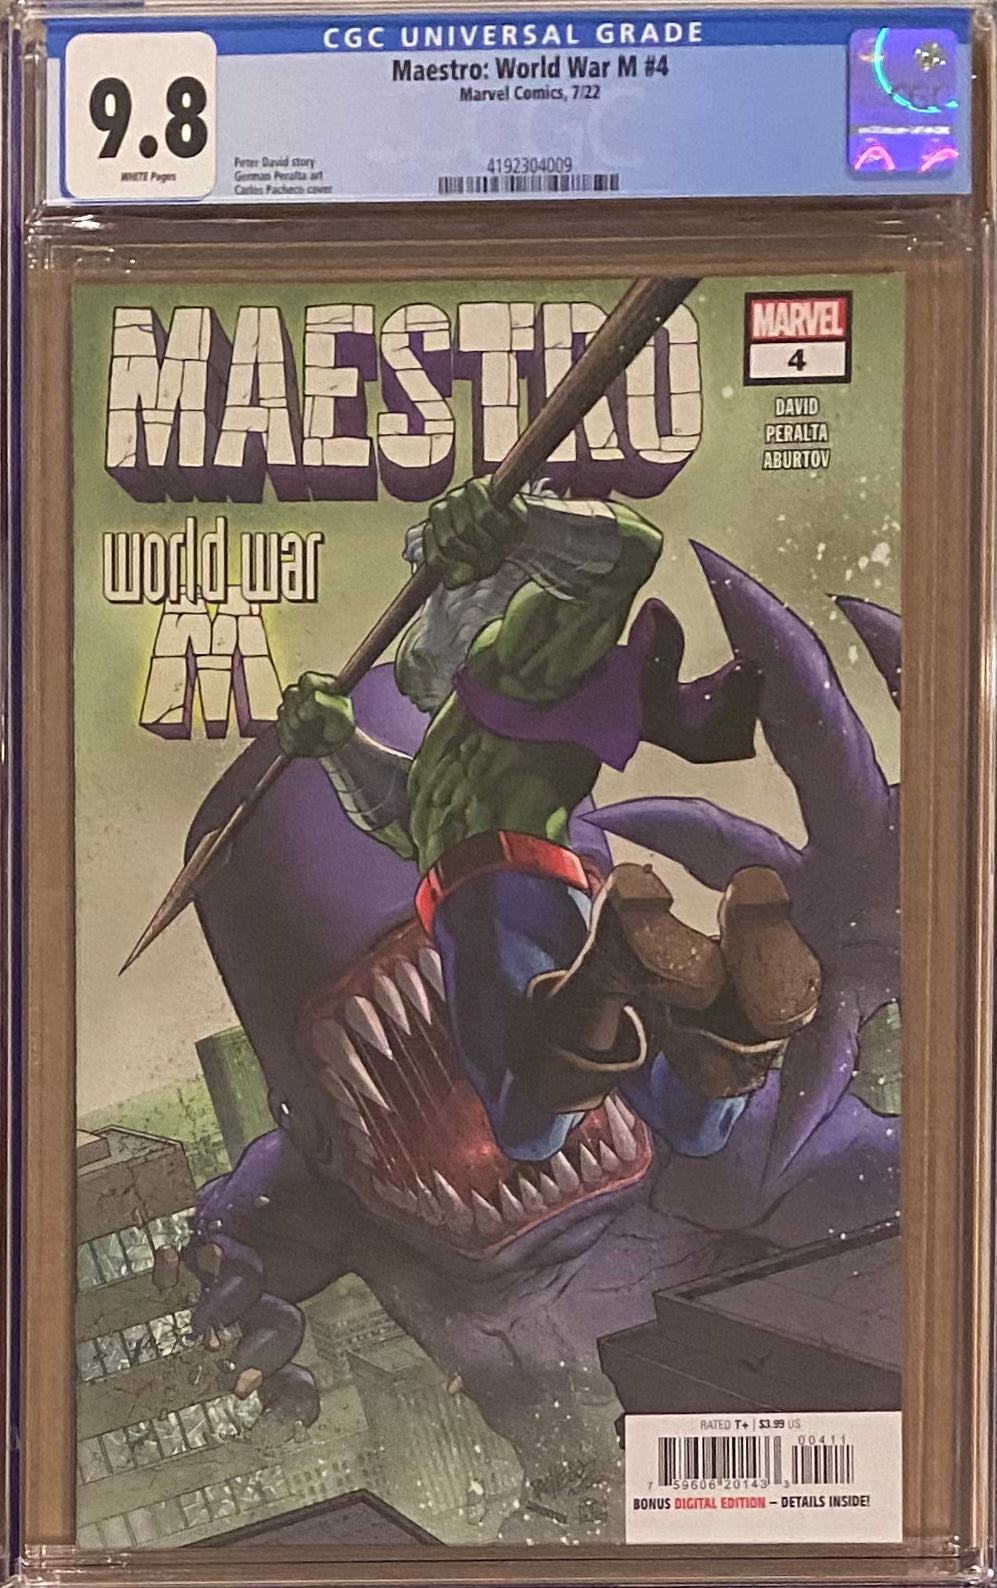 Maestro: World War M #4 CGC 9.8